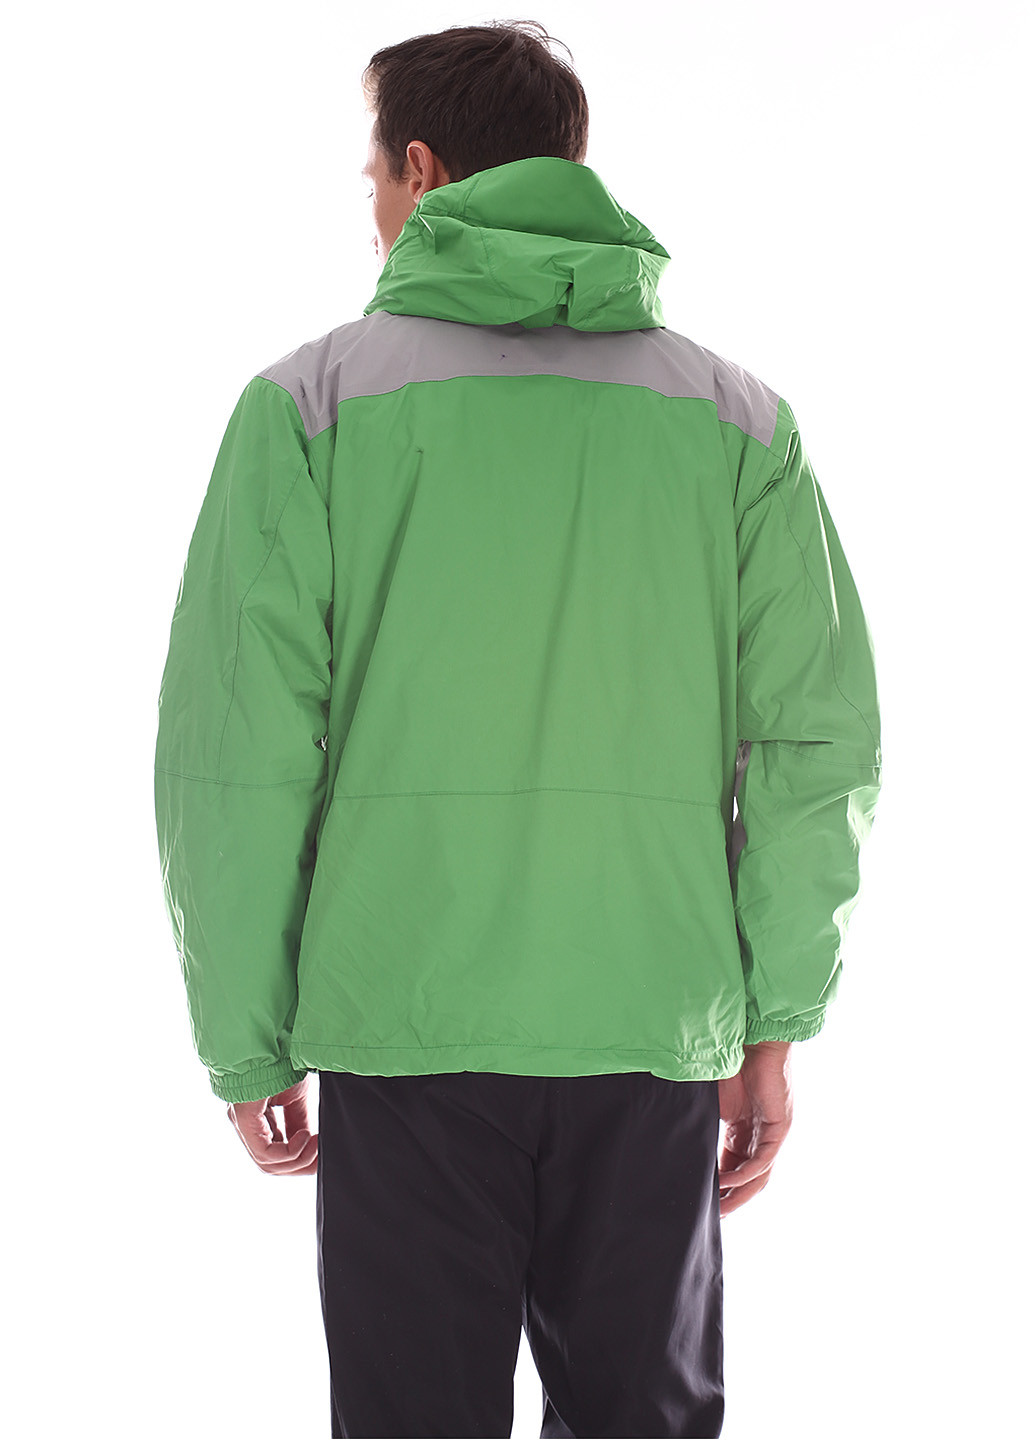 Зелена зимня куртка лижна Columbia